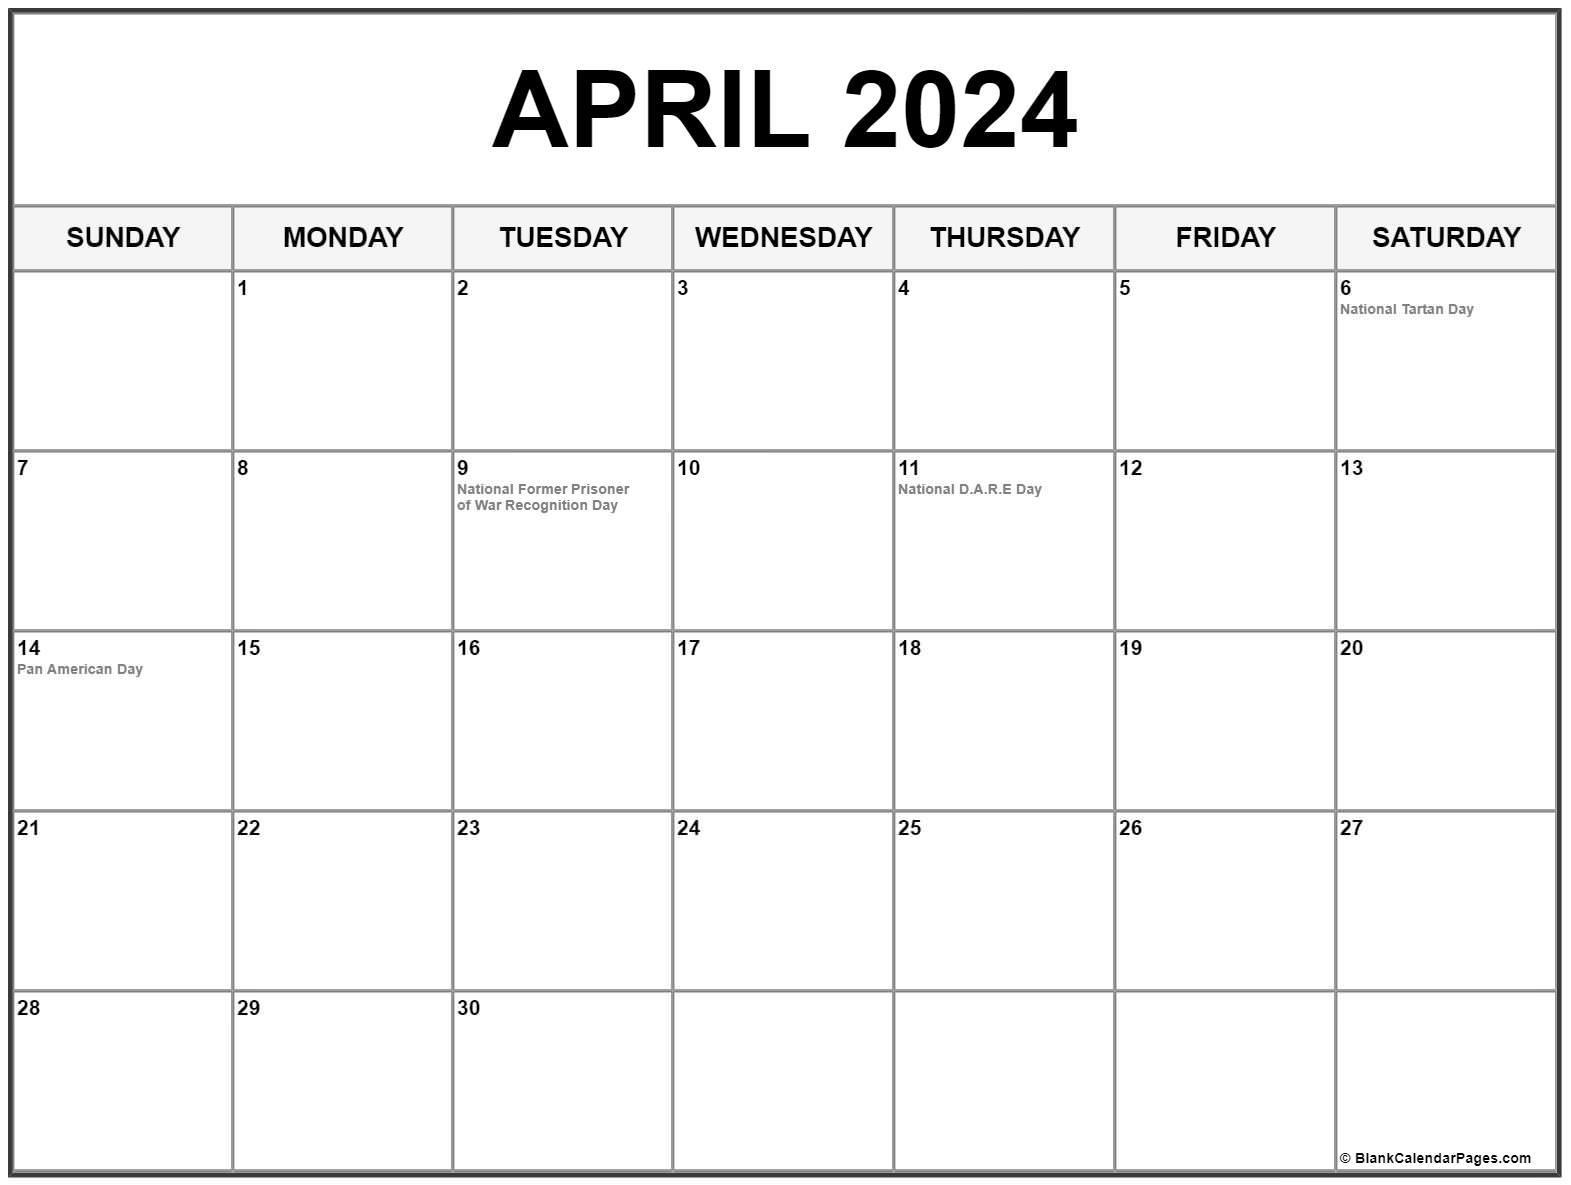 April 2024 With Holidays Calendar regarding April 2024 Holiday Calendar